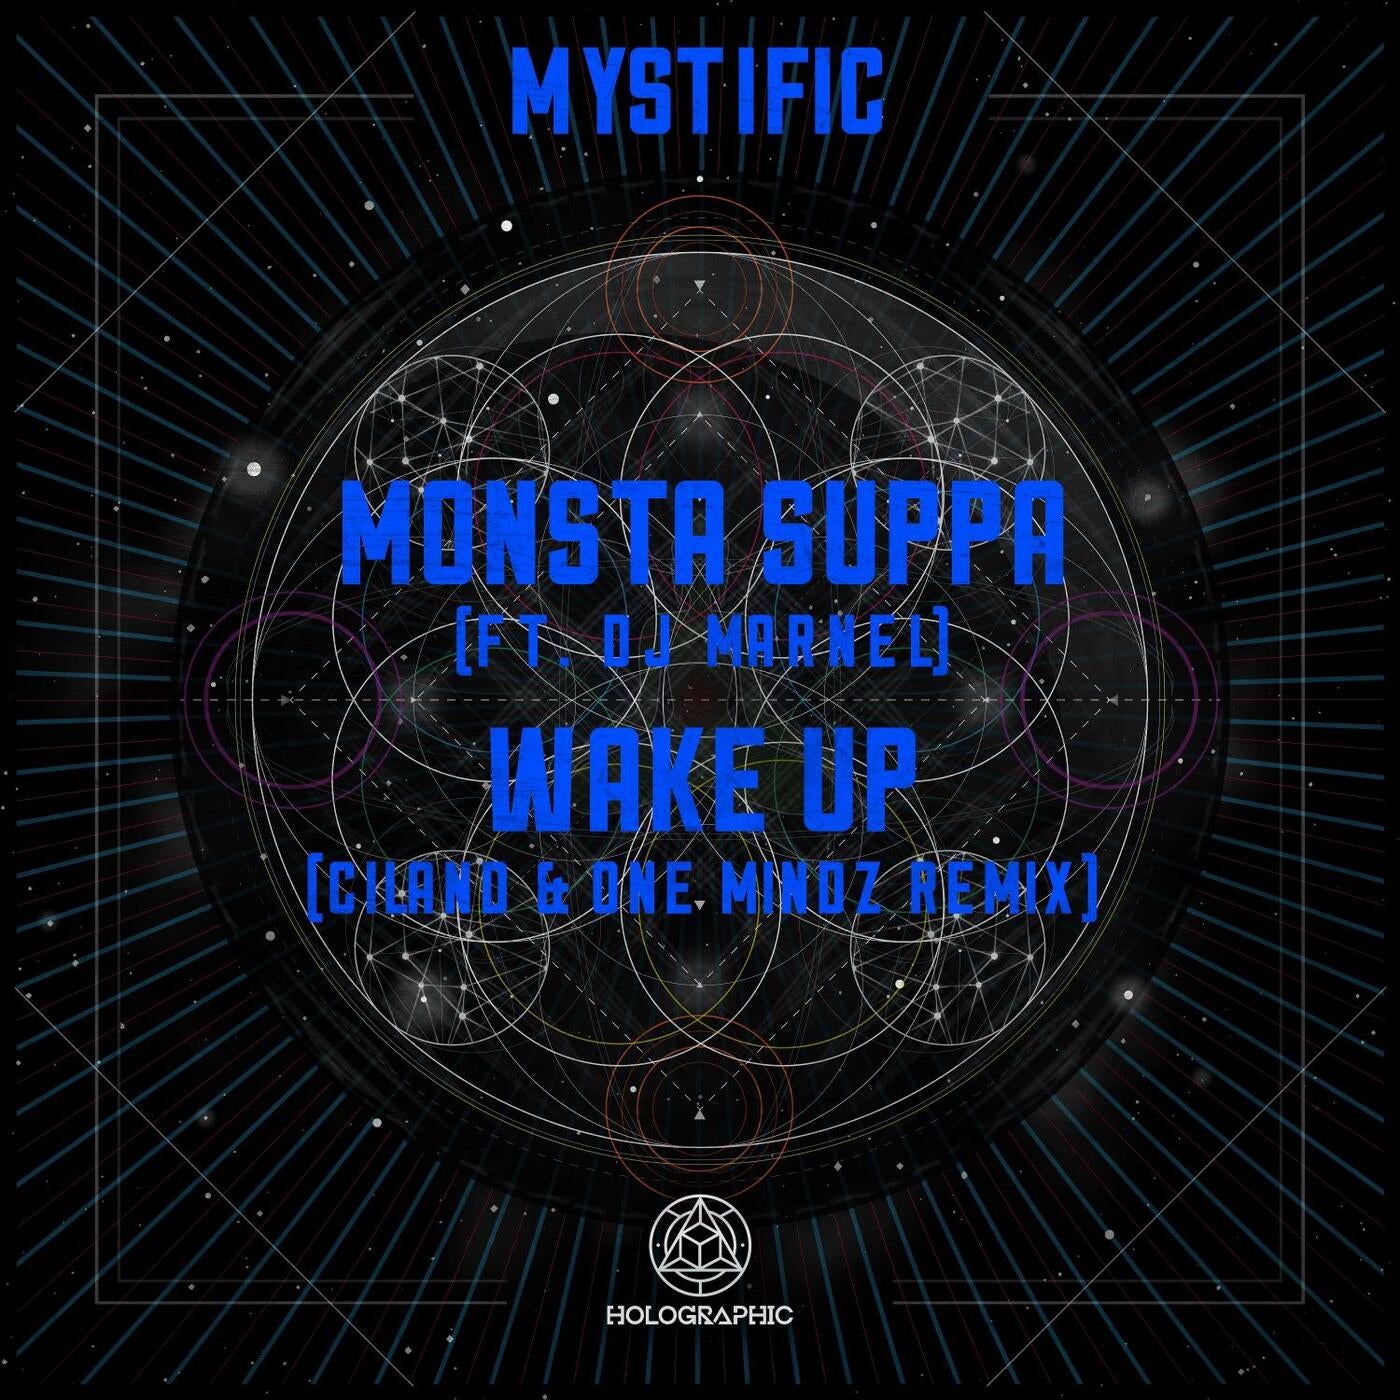 Monsta Suppa / Wake Up (Ciland & One Mindz Remix)